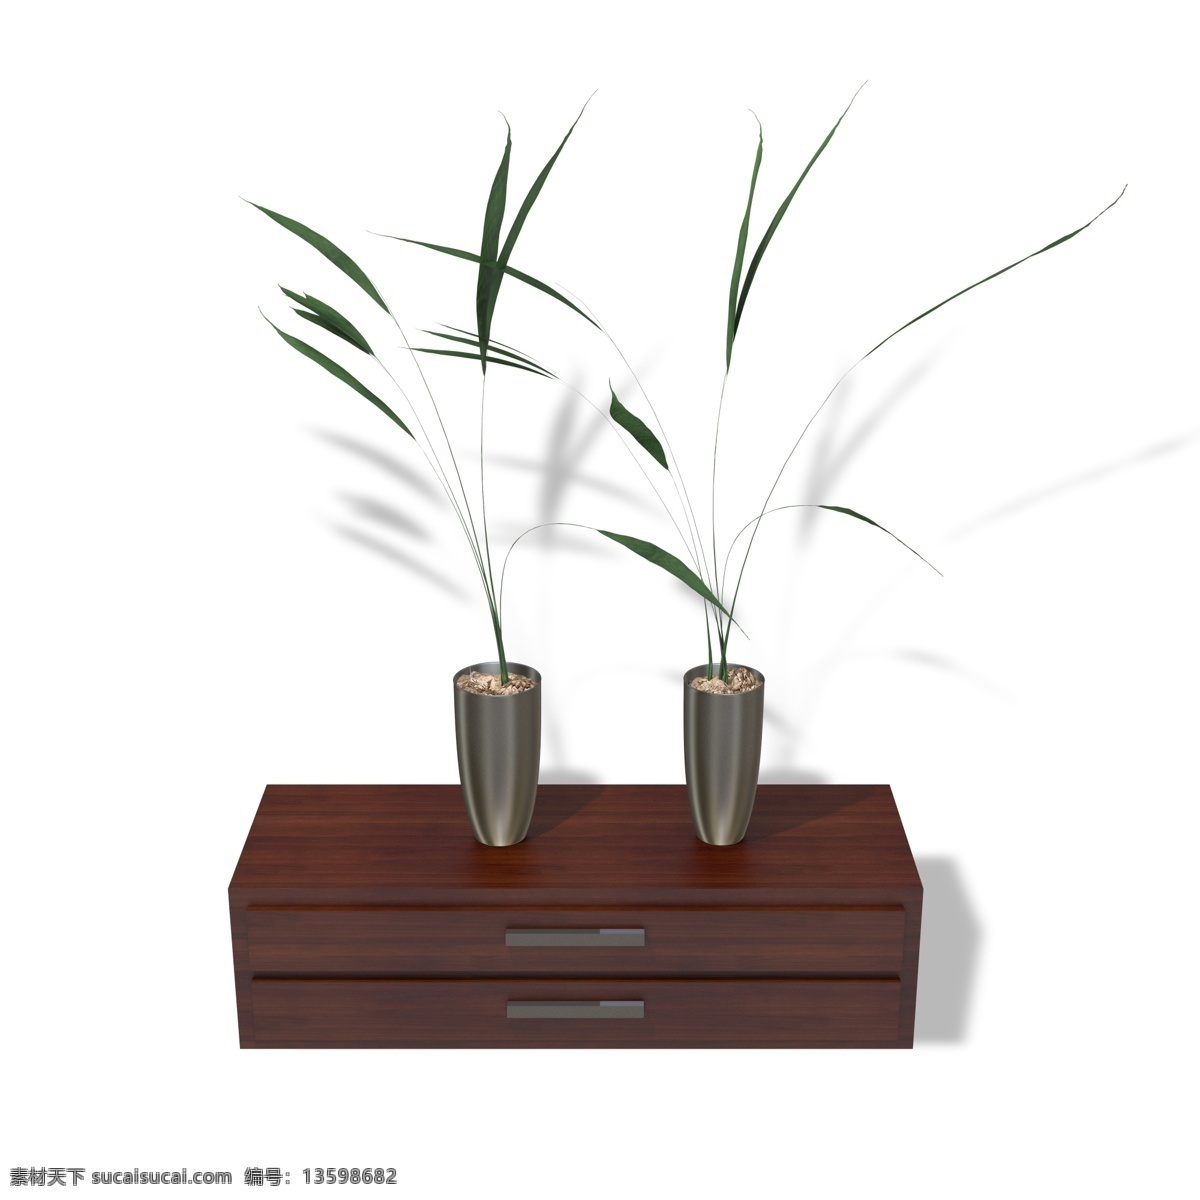 现代 家居装饰 摆设 植物 现代家居 家具 装饰 摆设植物 柜子 实木柜子 花瓶 叶子 绿色植物